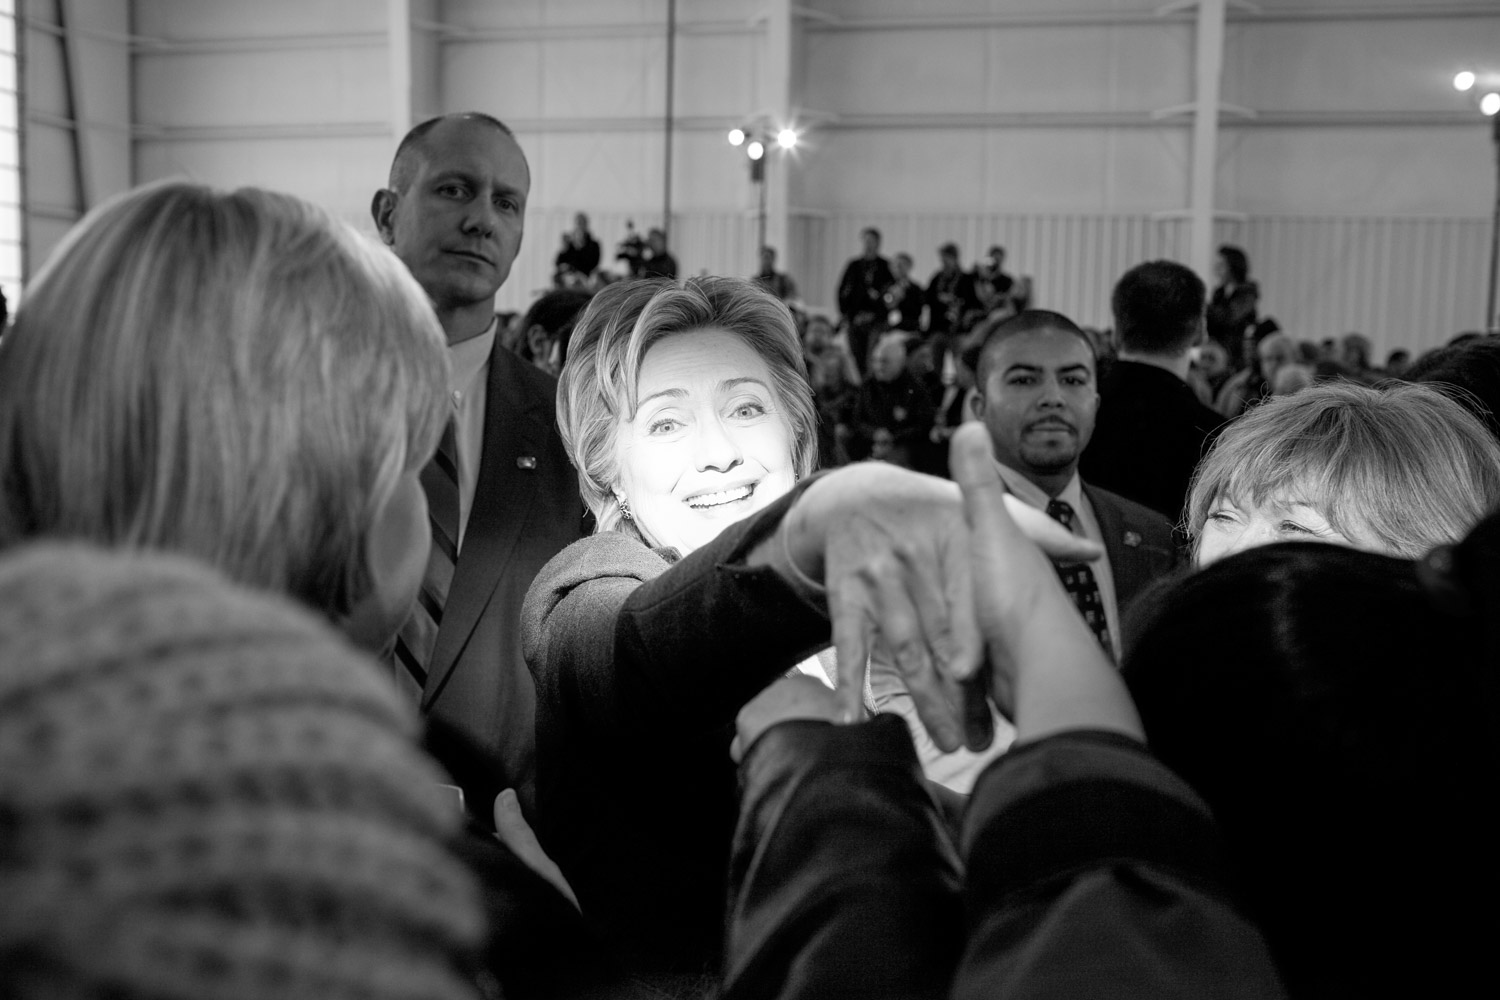  Hillary Clinton at Nashua rally 